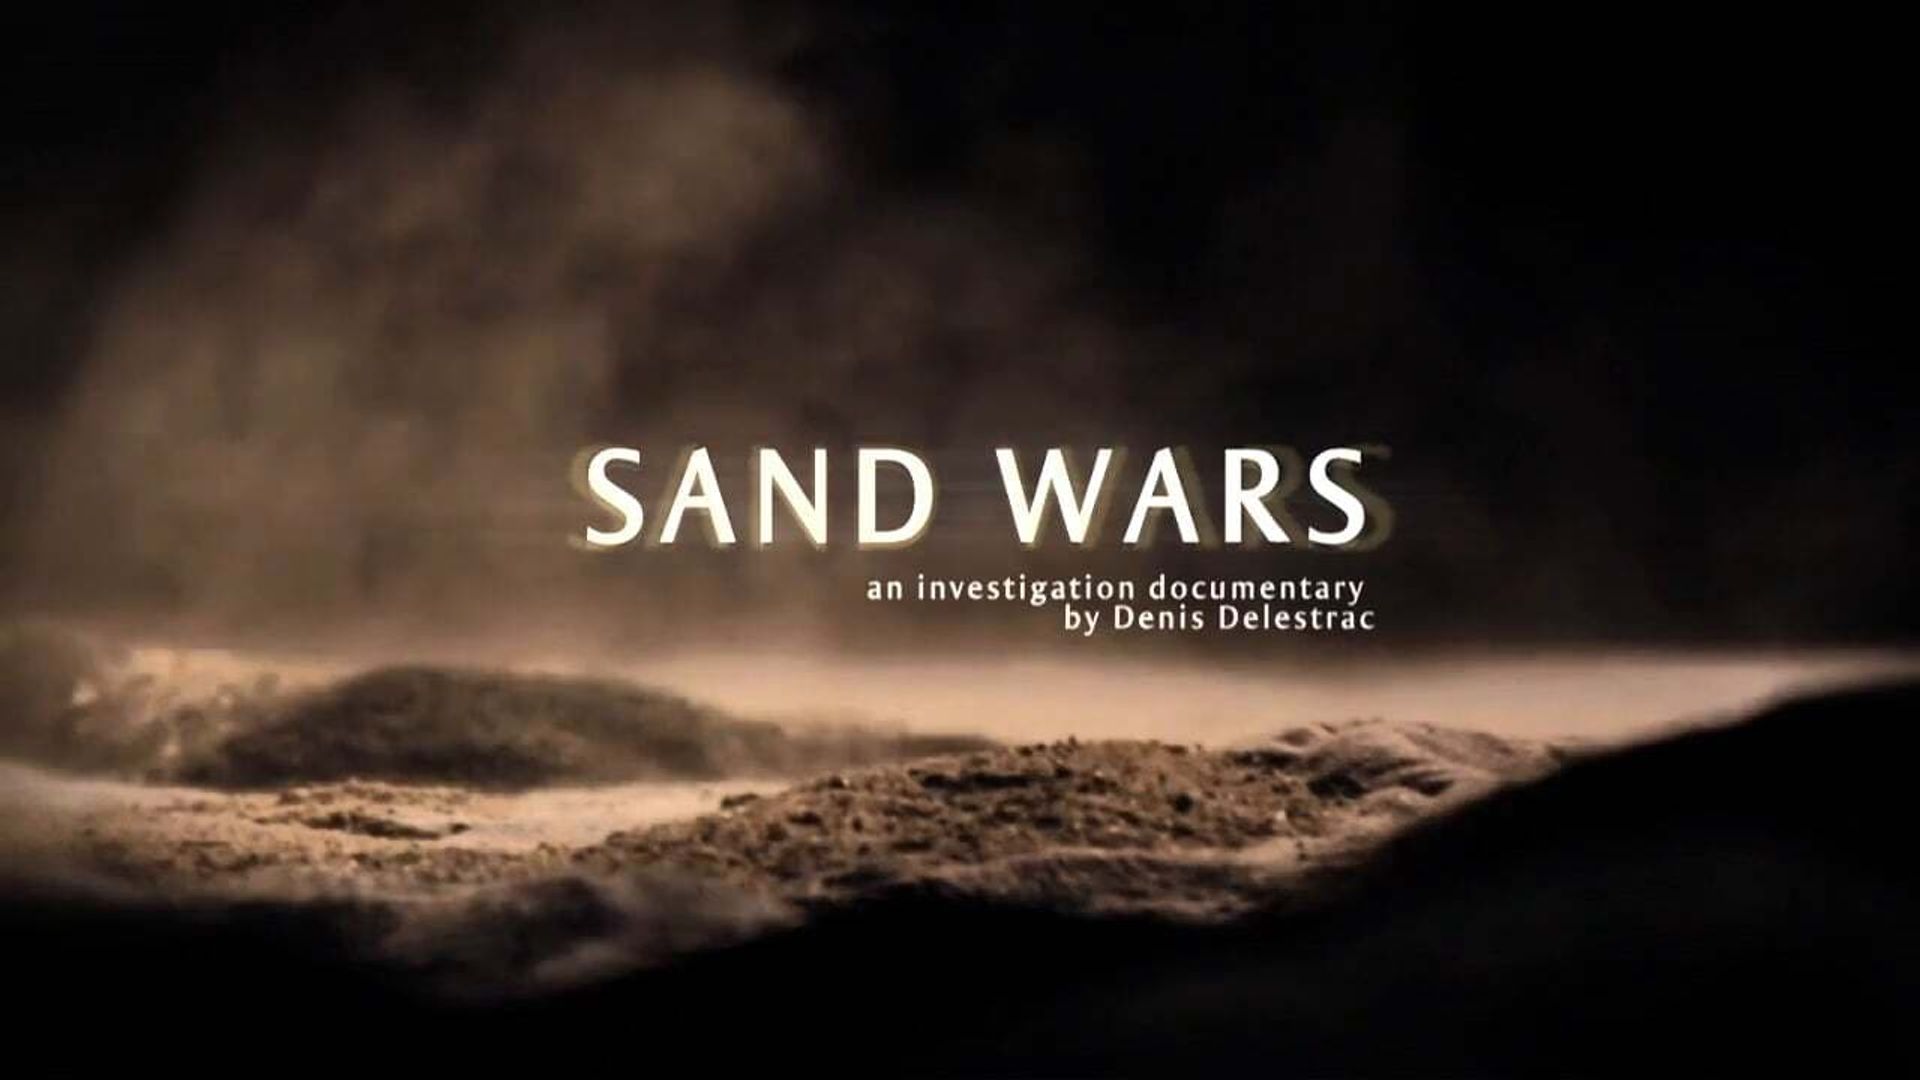 Sand Wars background